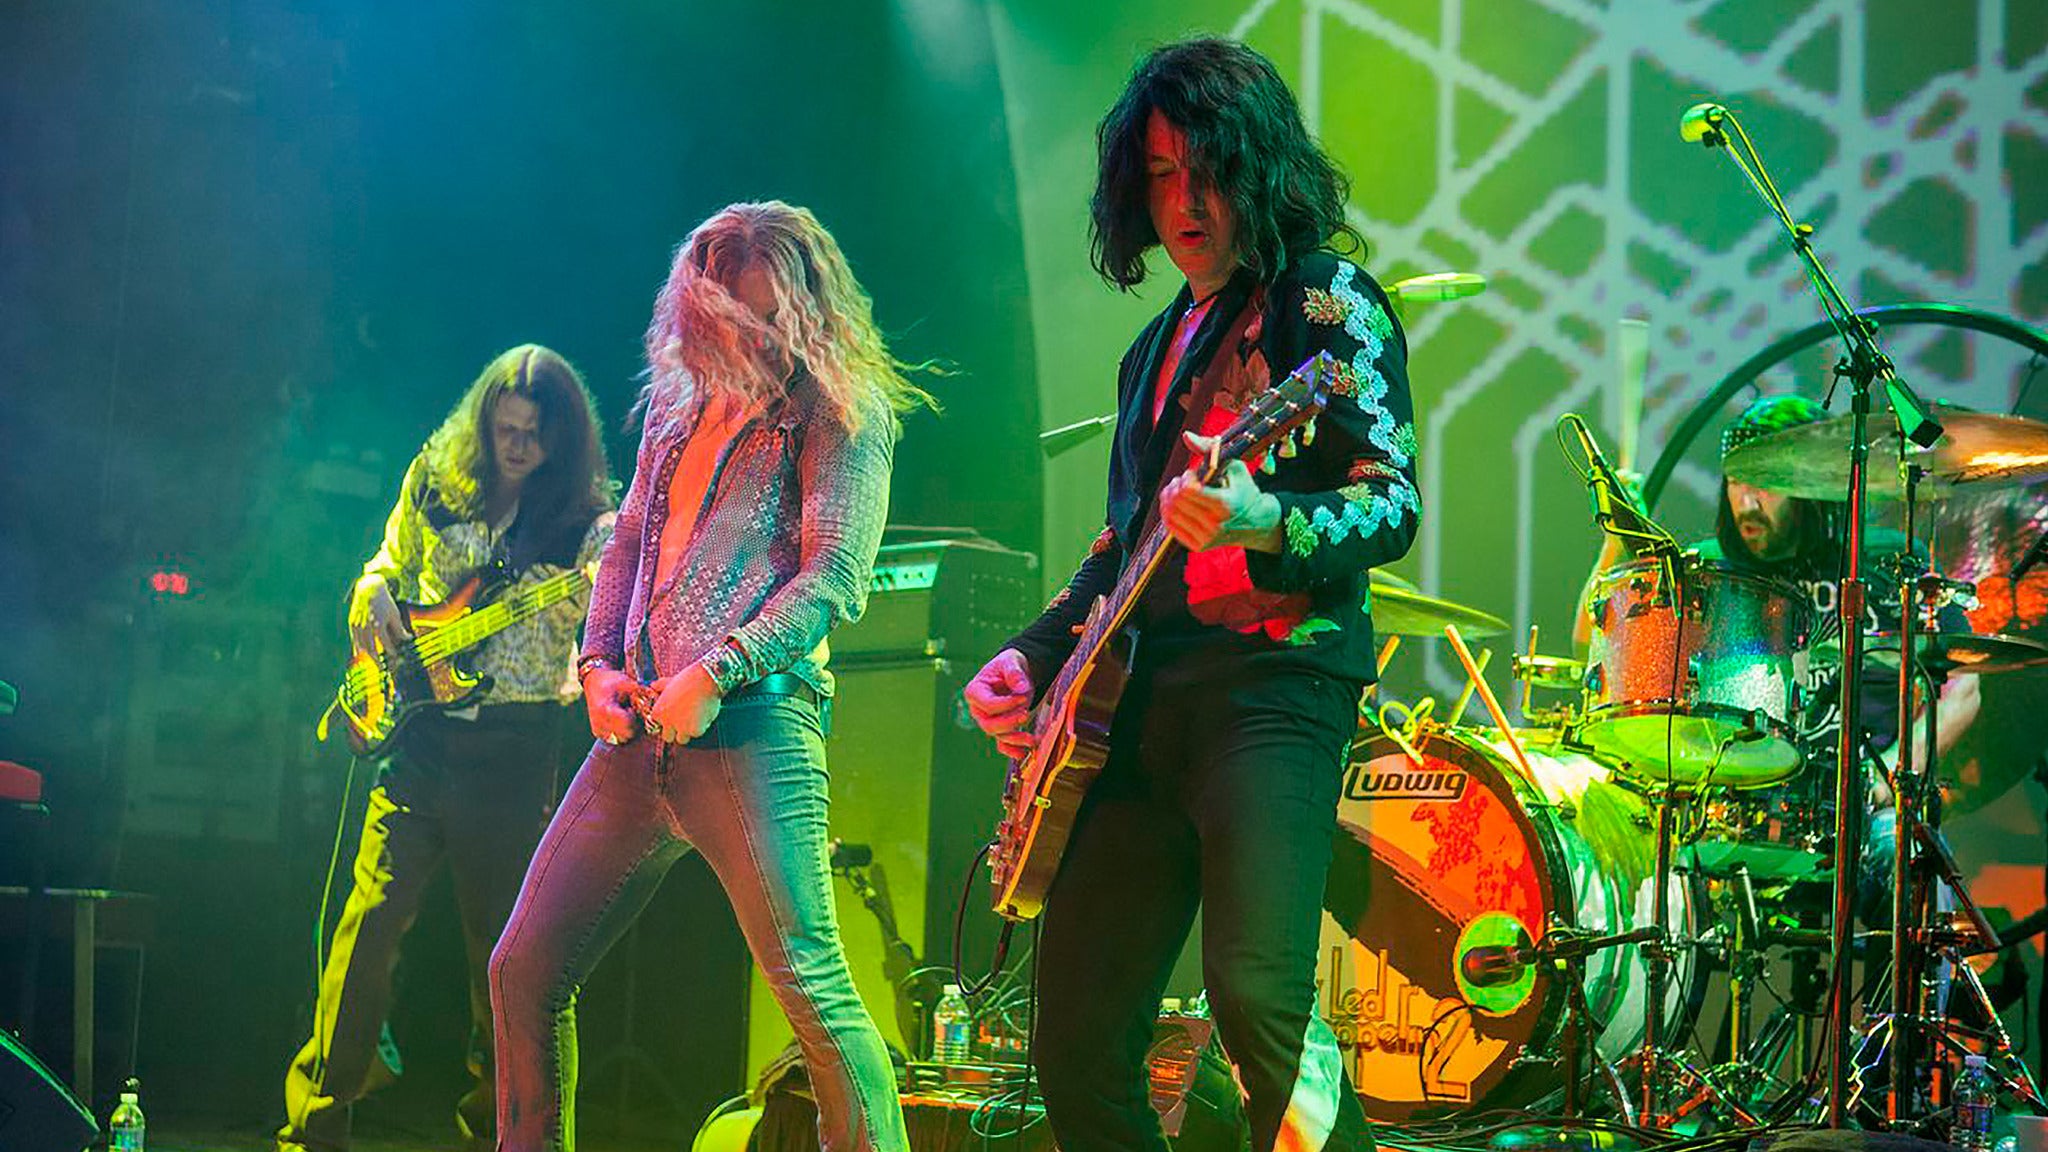 Led Zeppelin 2 pre-sale password for early tickets in Cincinnati